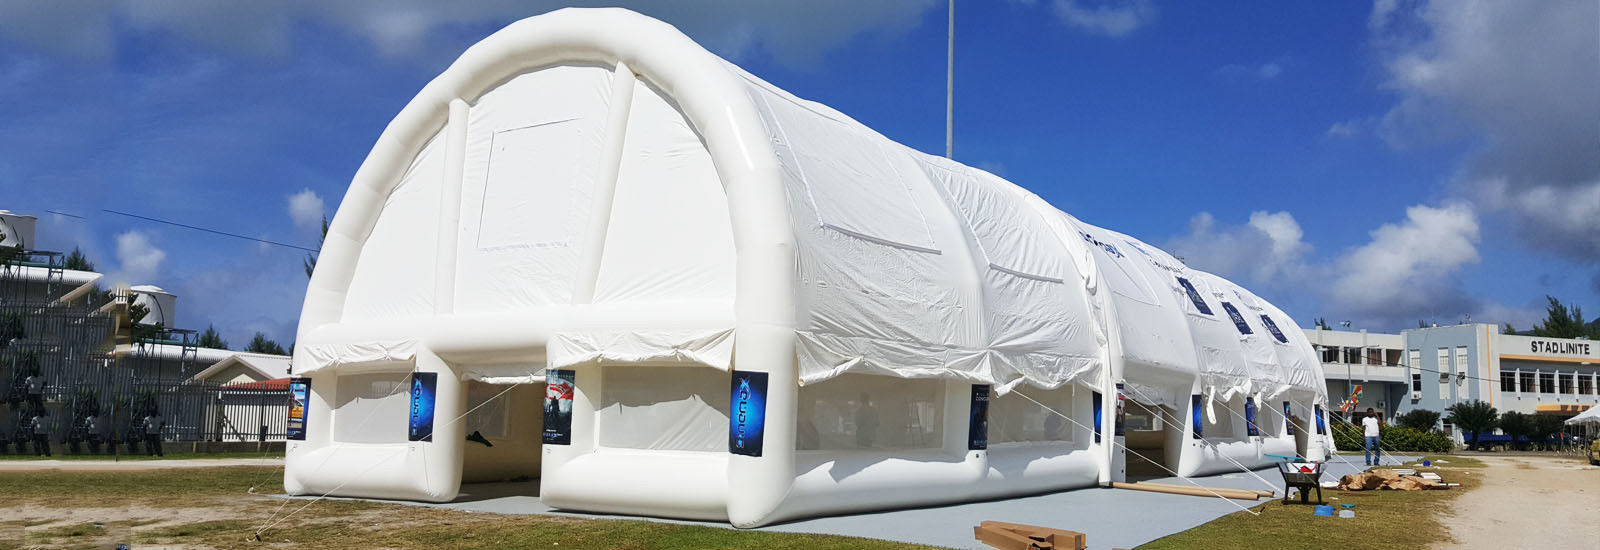 tenda inflável evento